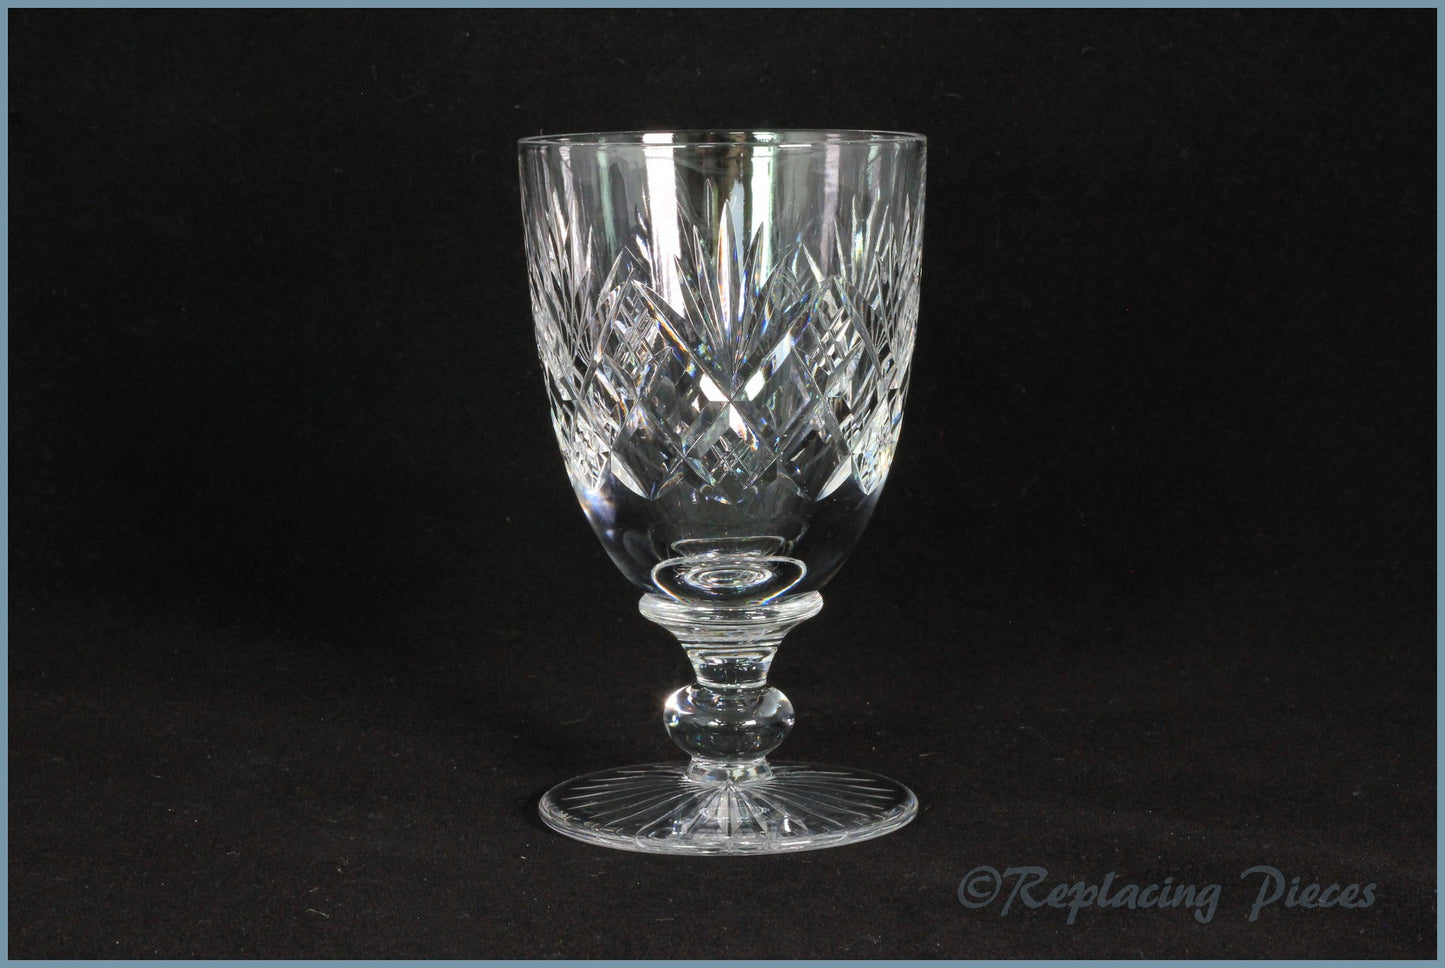 Tudor - Knyghton - White Wine Glass